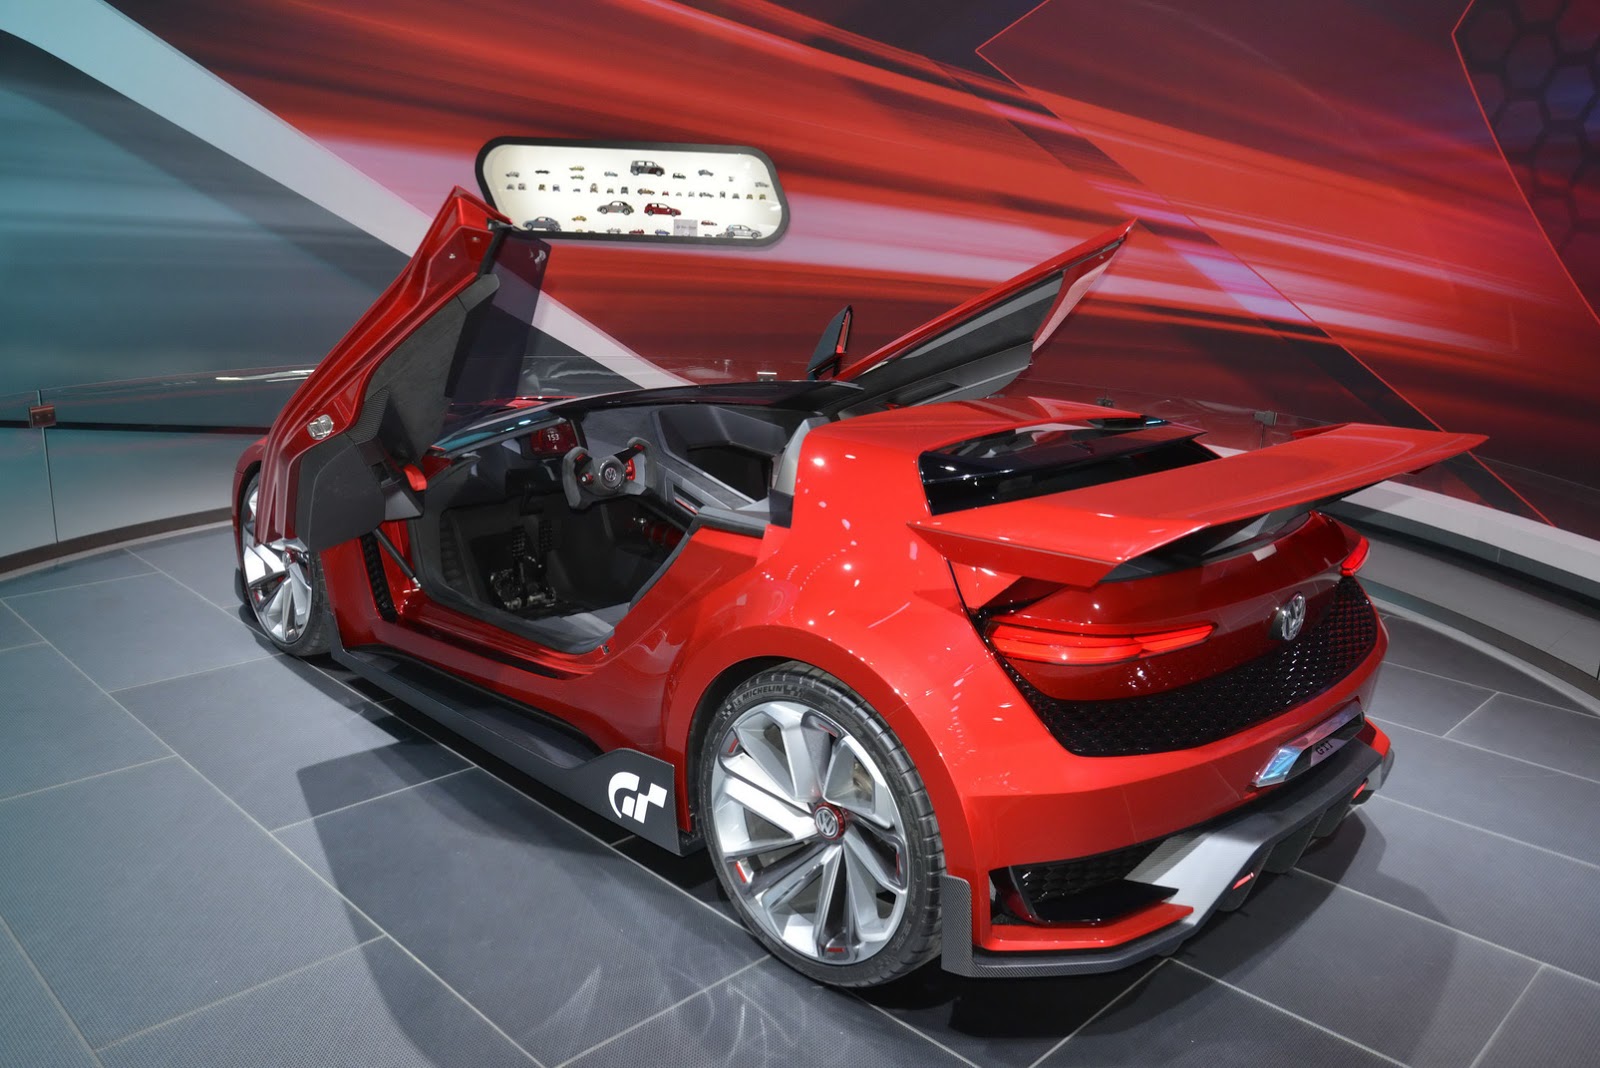 VW_Roadster_GTI_4.jpg